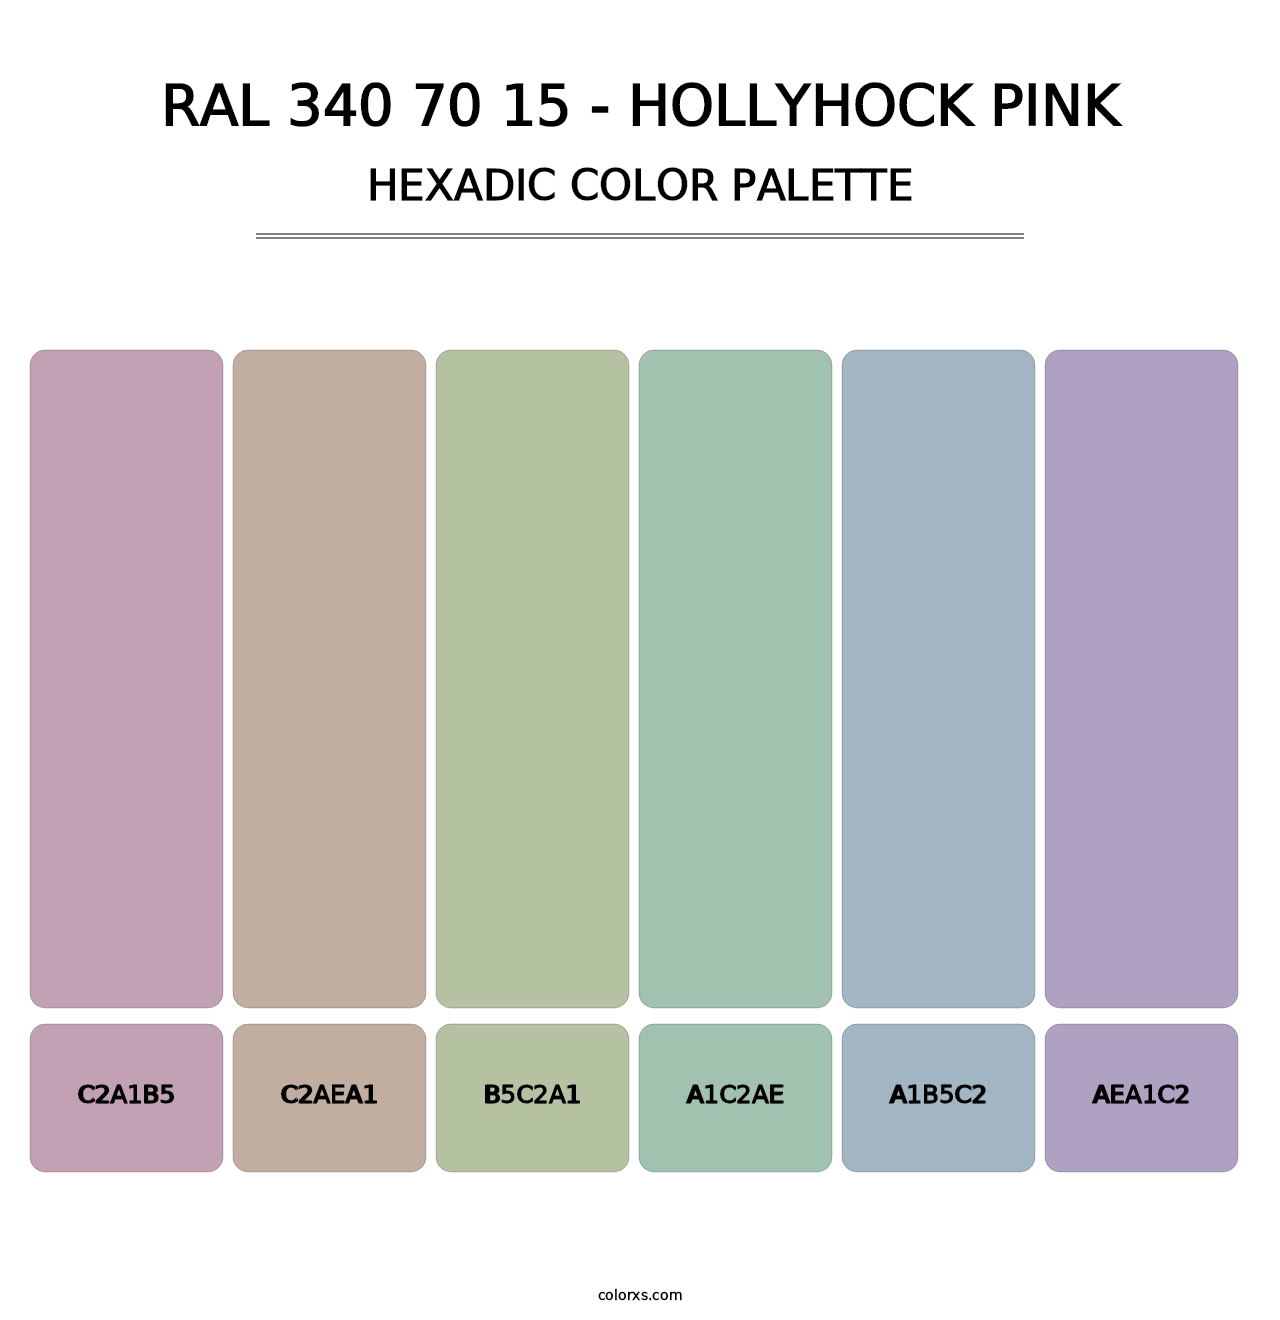 RAL 340 70 15 - Hollyhock Pink - Hexadic Color Palette